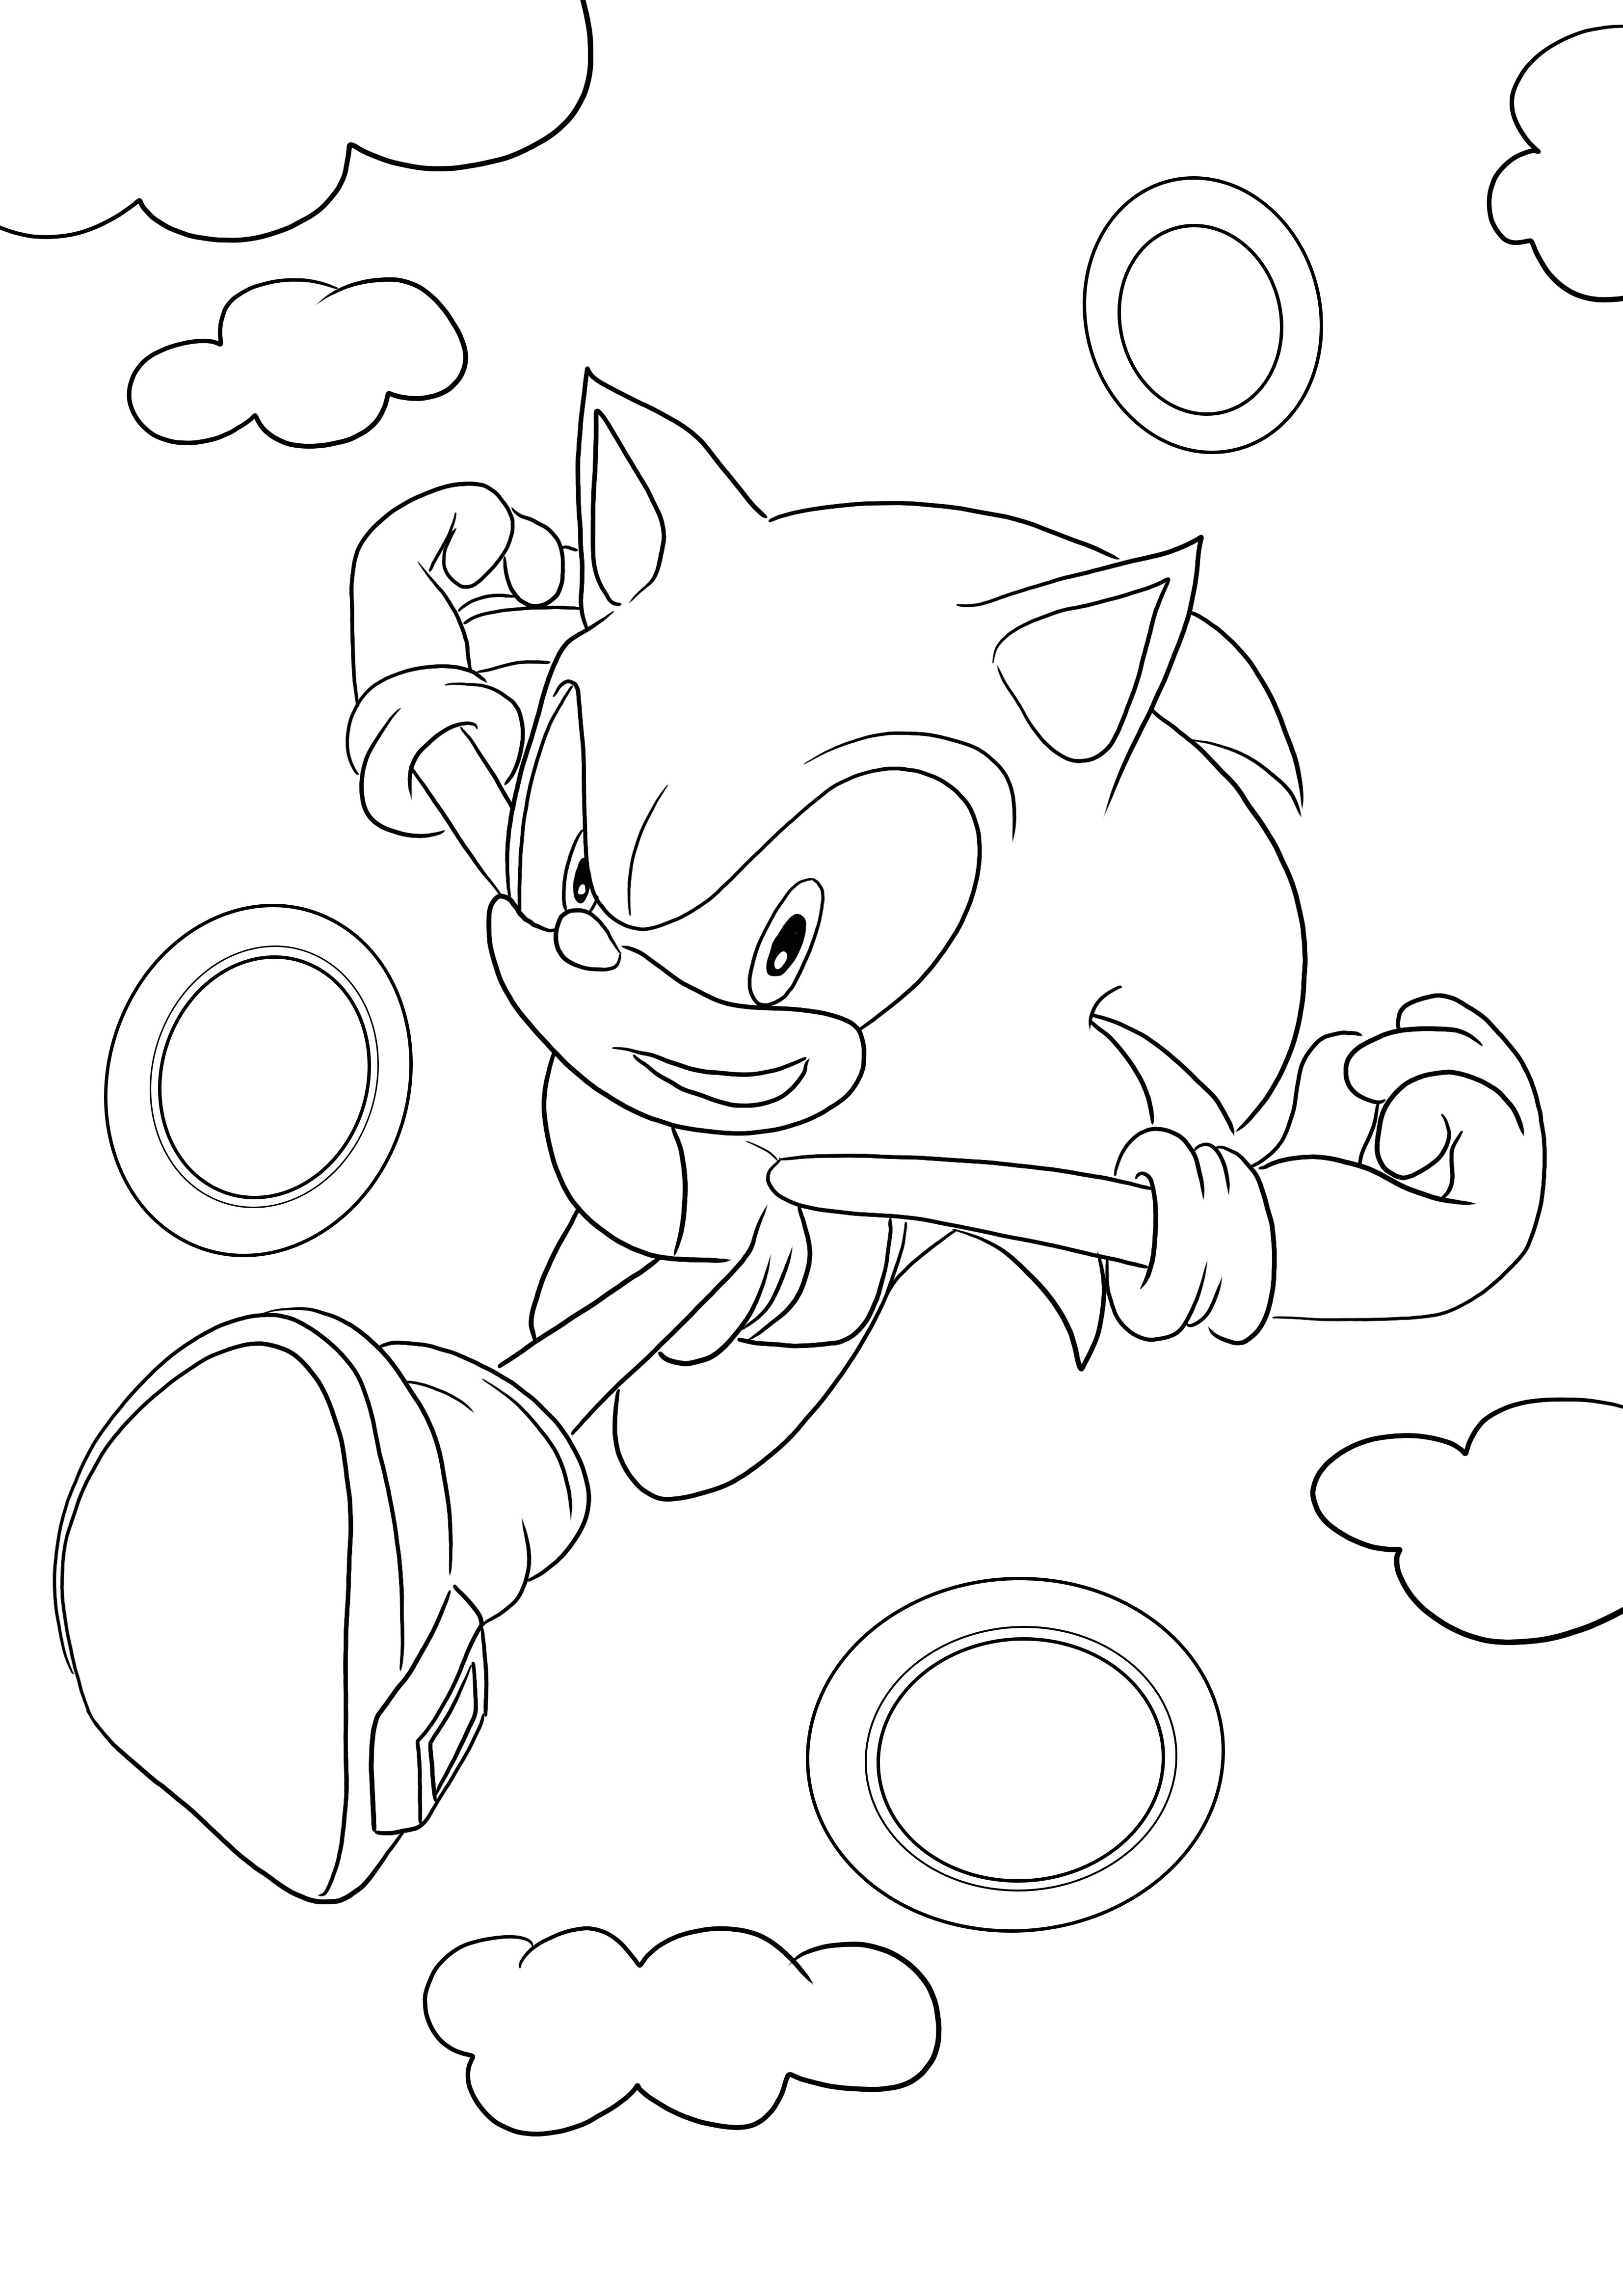 A gyűrűkön átfutó Sonic ingyenes letöltése és színezése